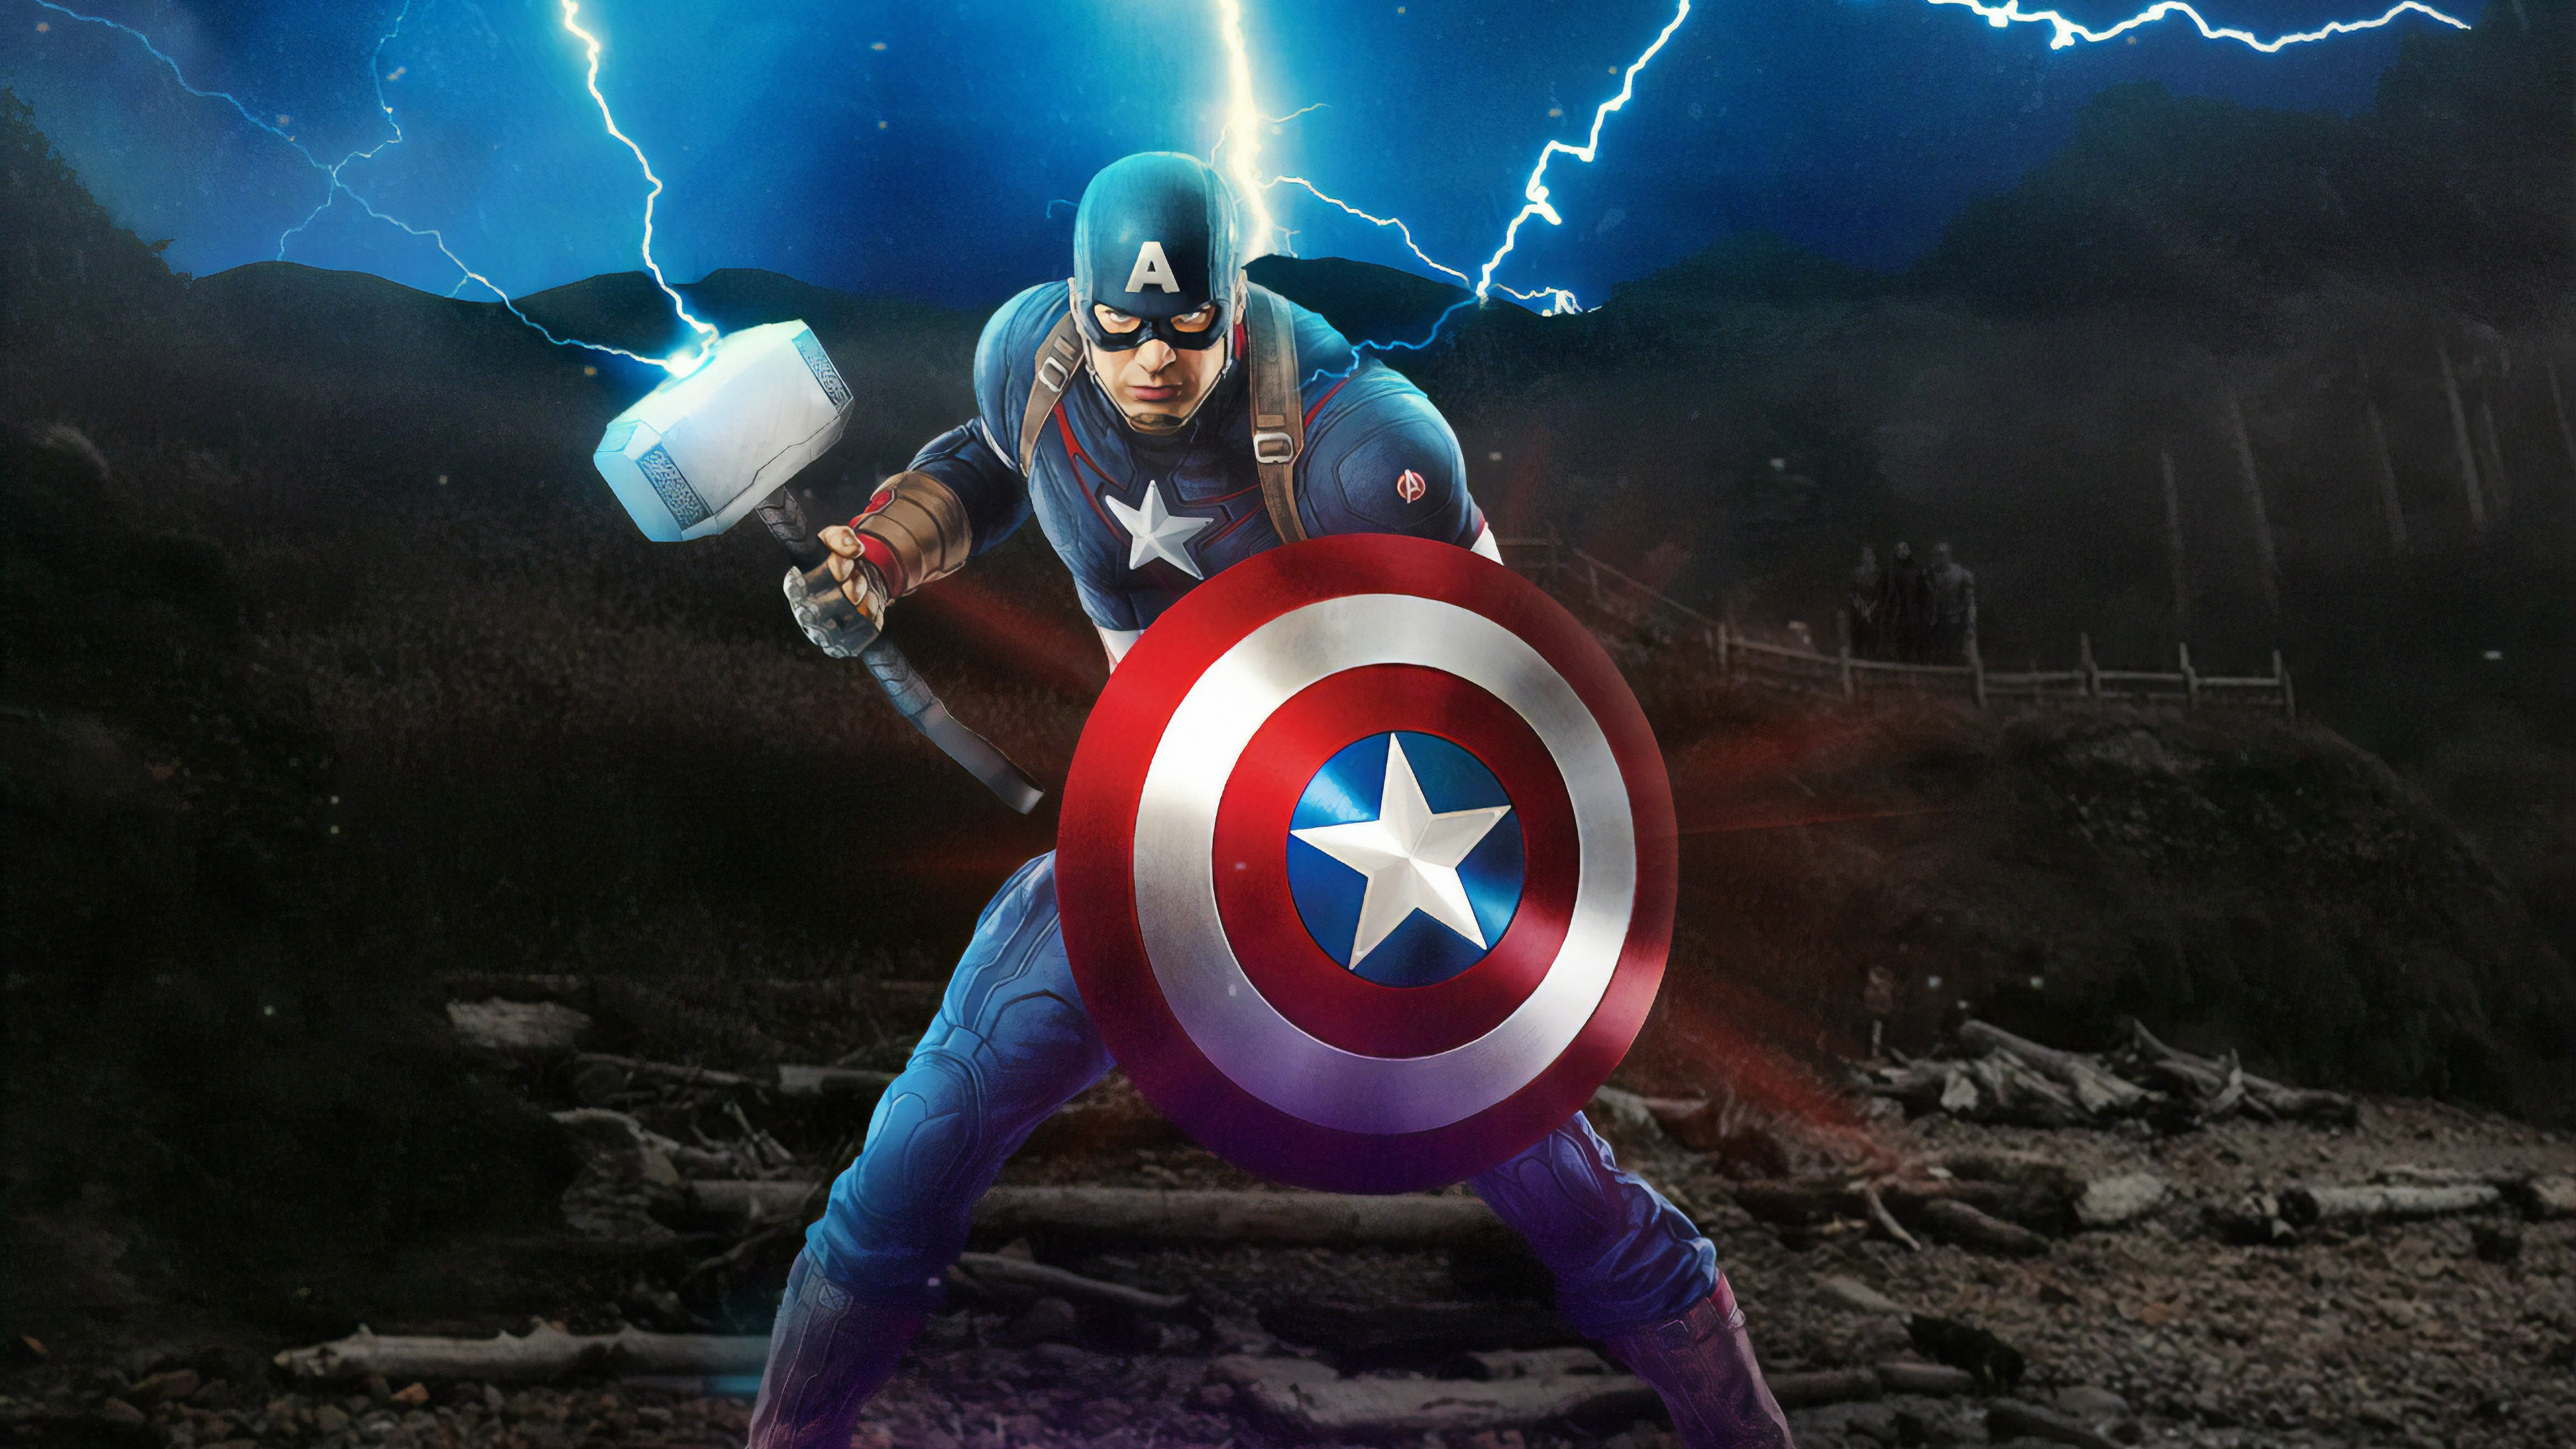 1280x1024 Captain America Mjolnir Avengers Endgame 4k Artwork 1280x1024